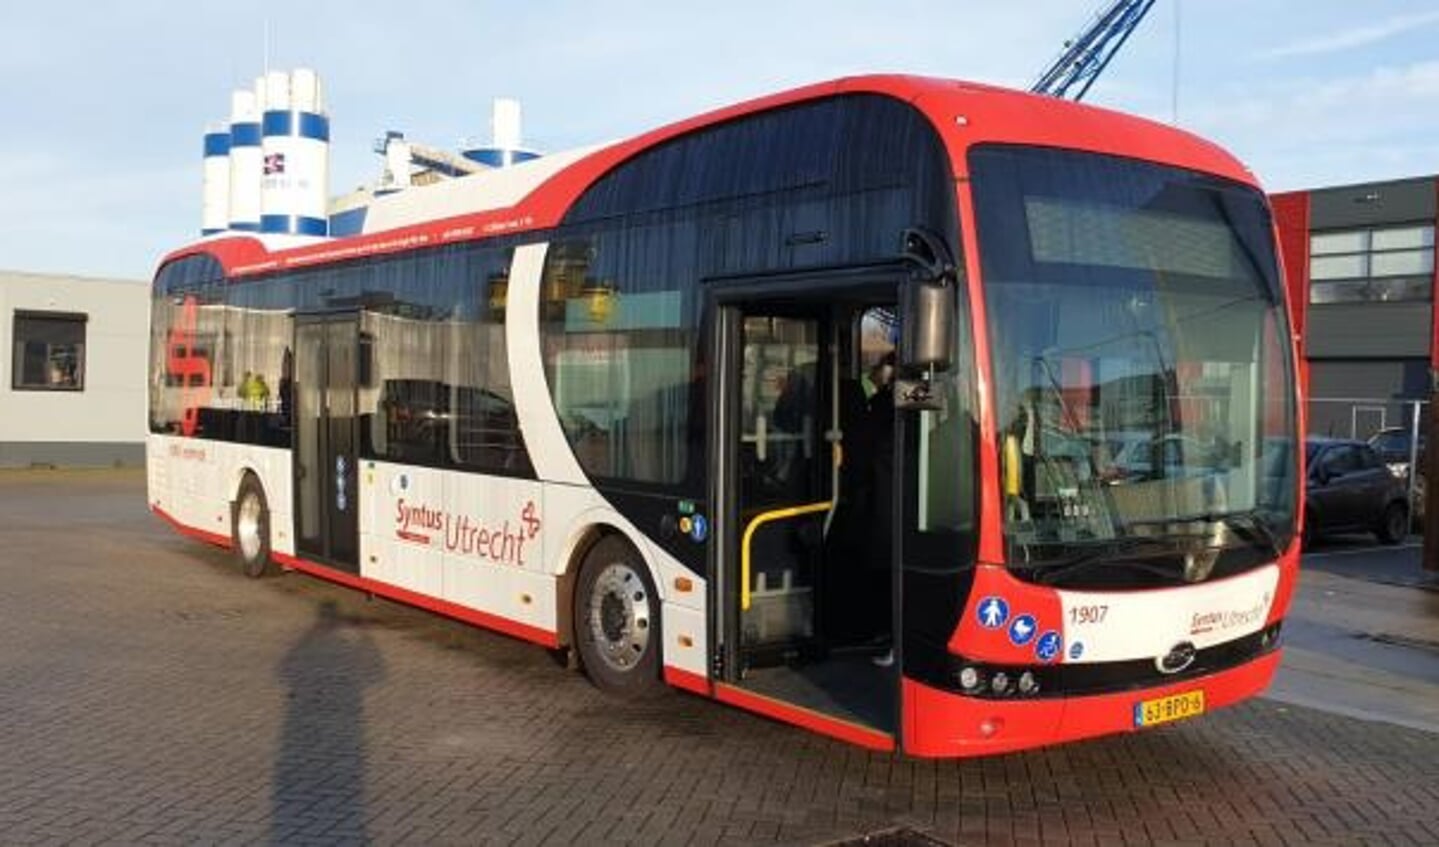 Nieuwe elektrische bussen van leverancier BYD voor Syntus Utrecht